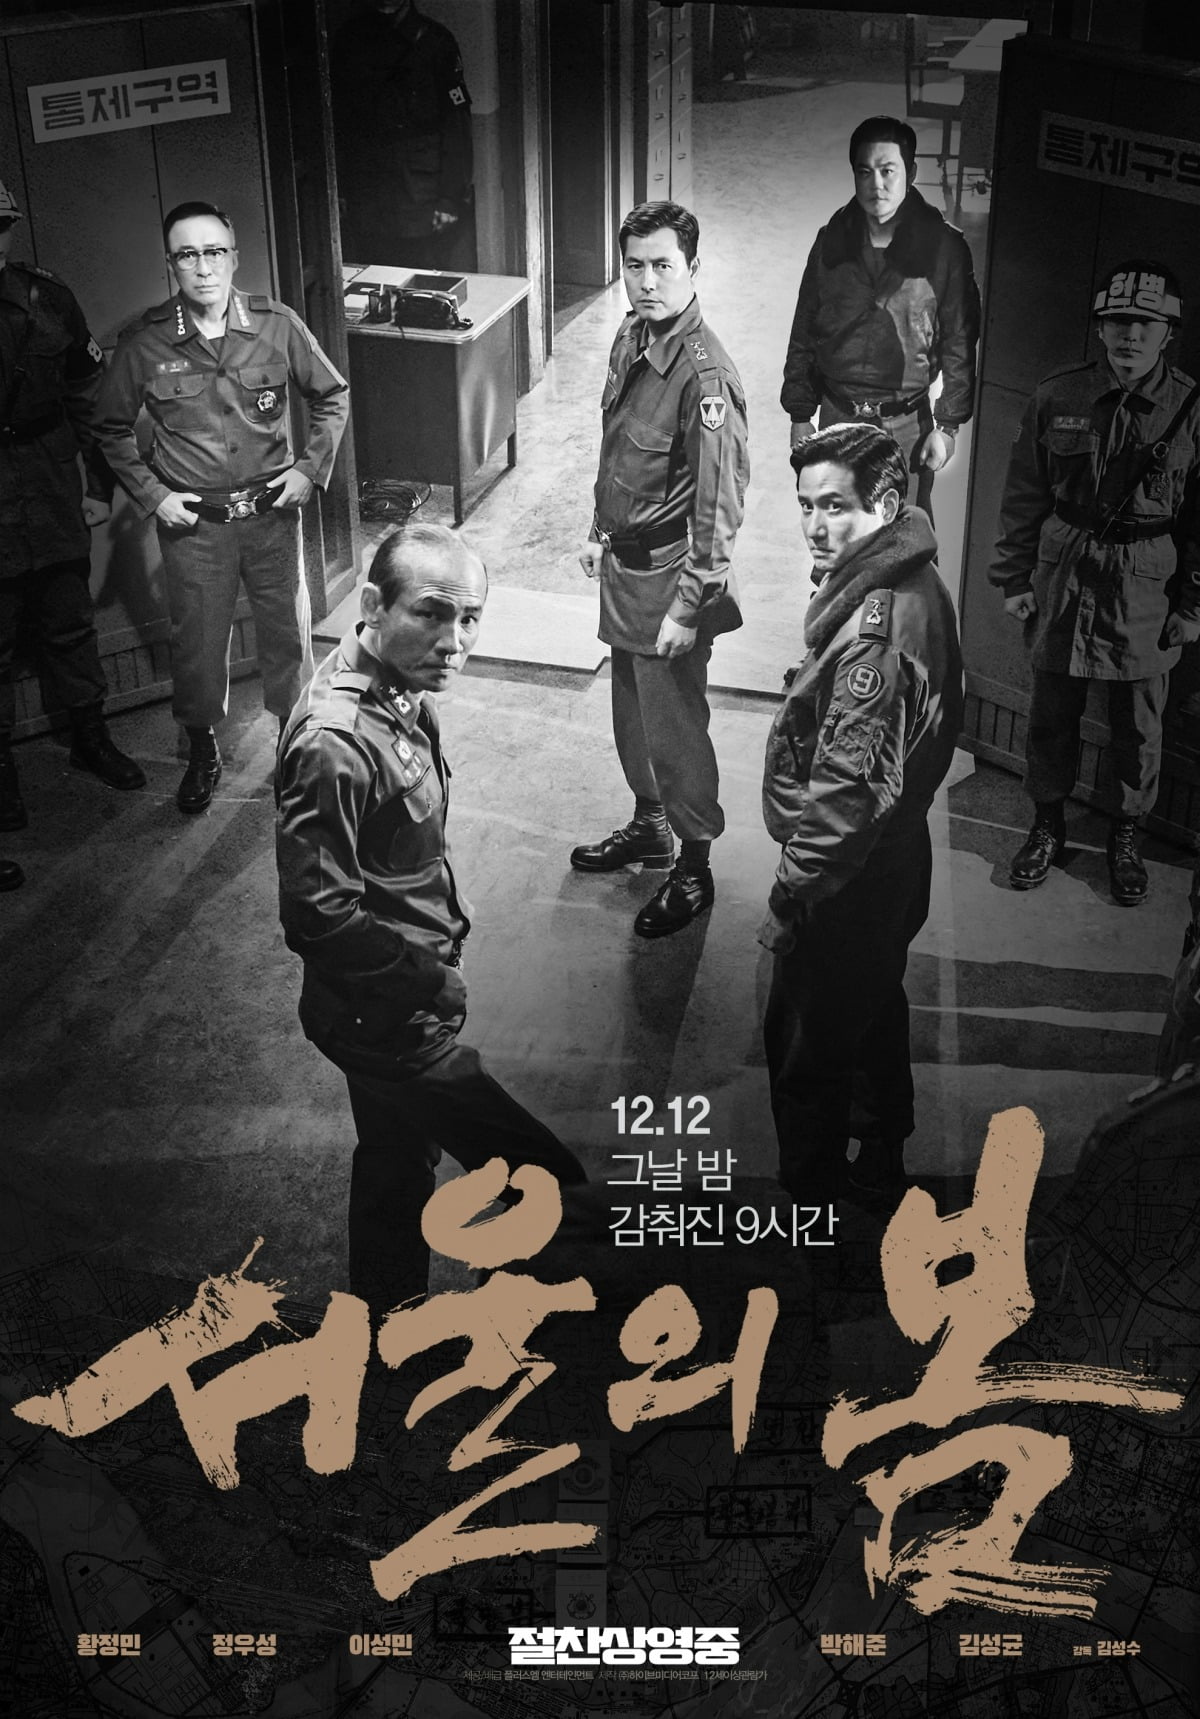 「ソウルの春」アジアフィルム賞の6部門候補